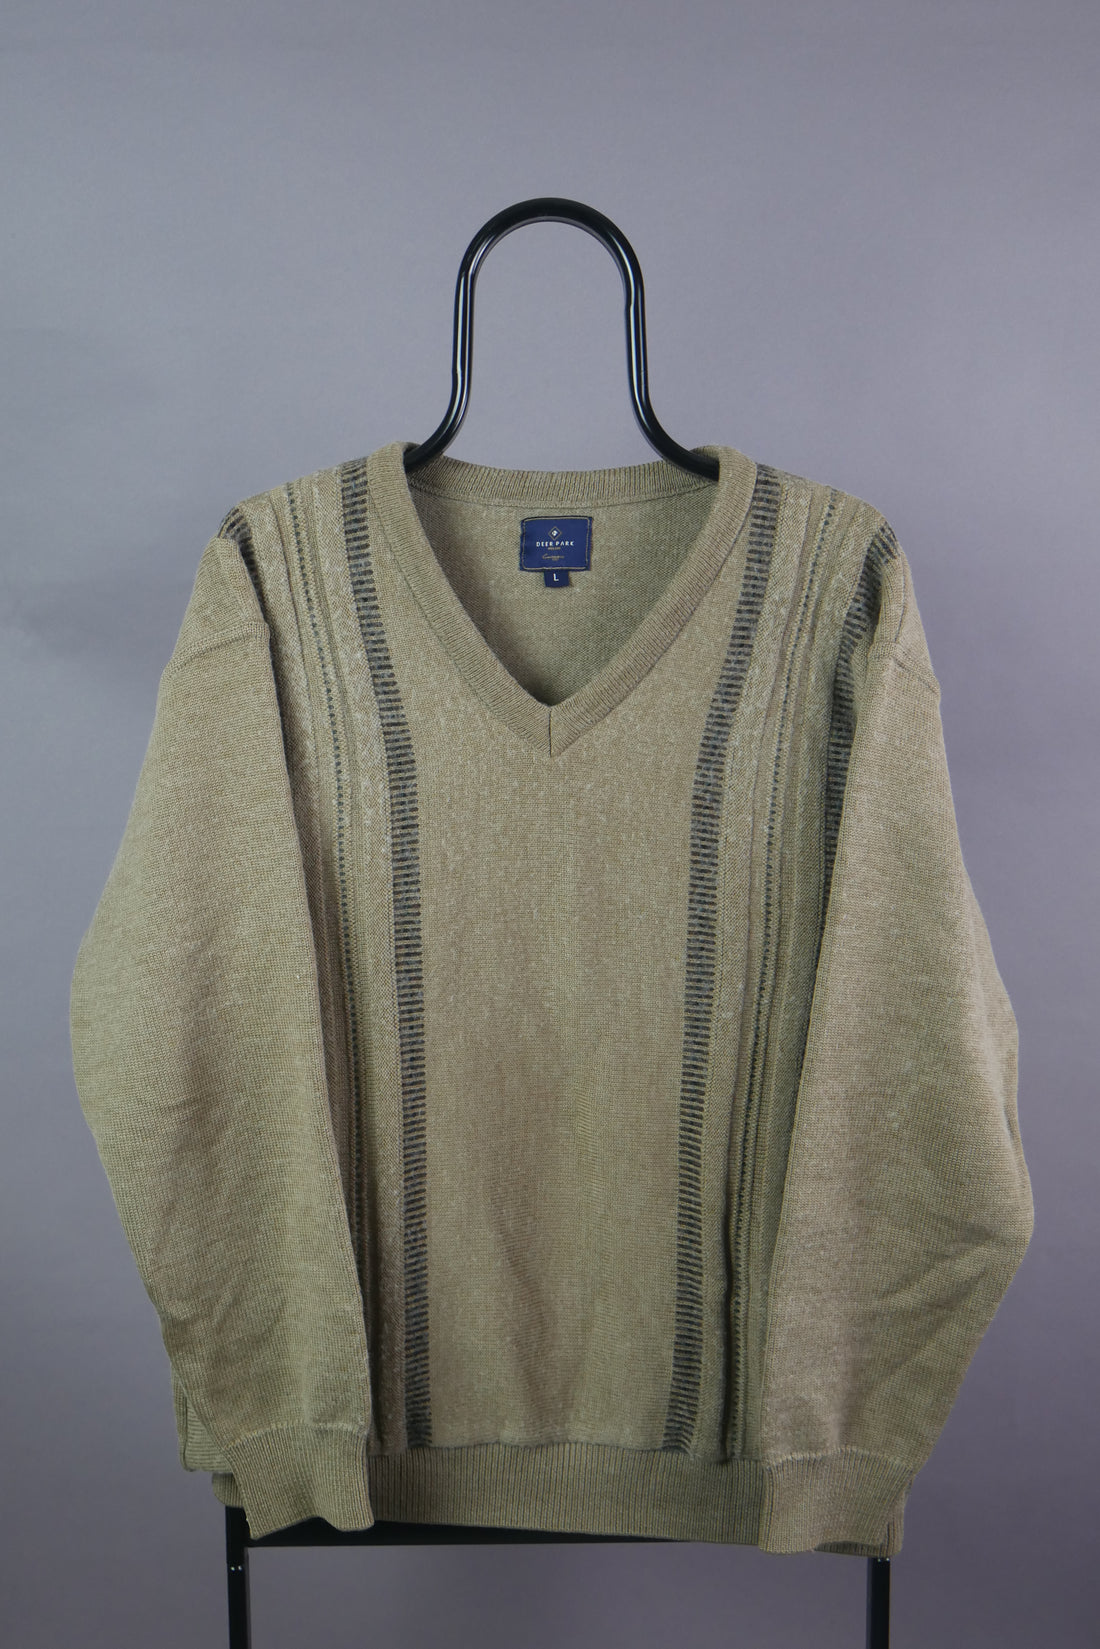 The Vintage Geometric Knit jumper (L)